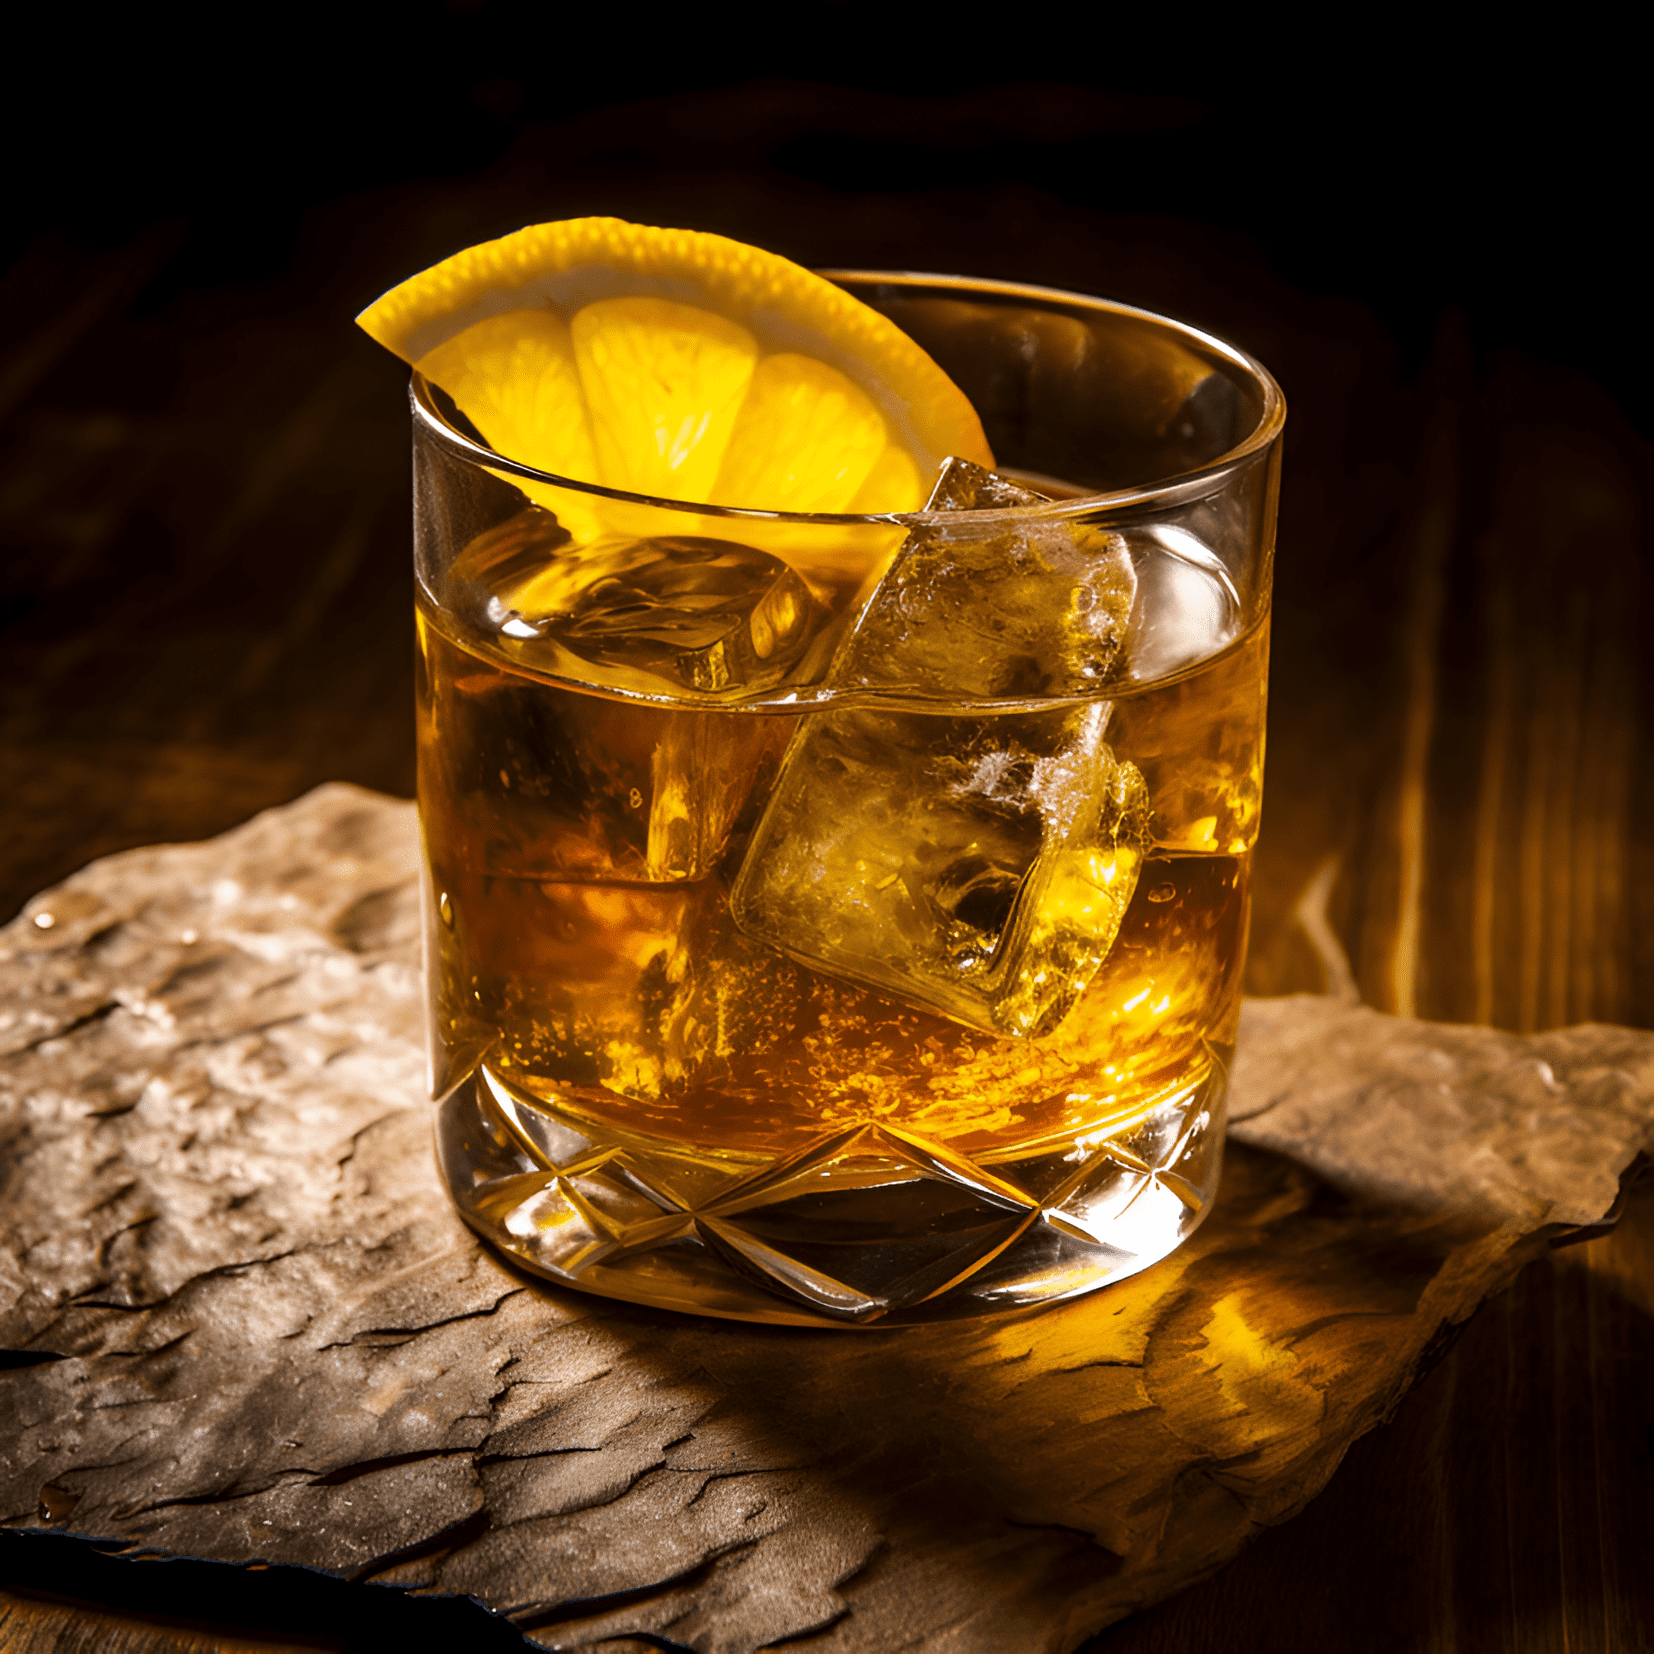 Rock and Rye Cóctel Receta - El cóctel Rock and Rye es una mezcla armoniosa de sabores dulces, picantes y cítricos. El whisky de centeno proporciona una base fuerte y robusta, mientras que el jarabe de caramelo de roca agrega un toque de dulzura. La adición de cáscaras de limón y naranja aporta una nota cítrica refrescante a la mezcla.